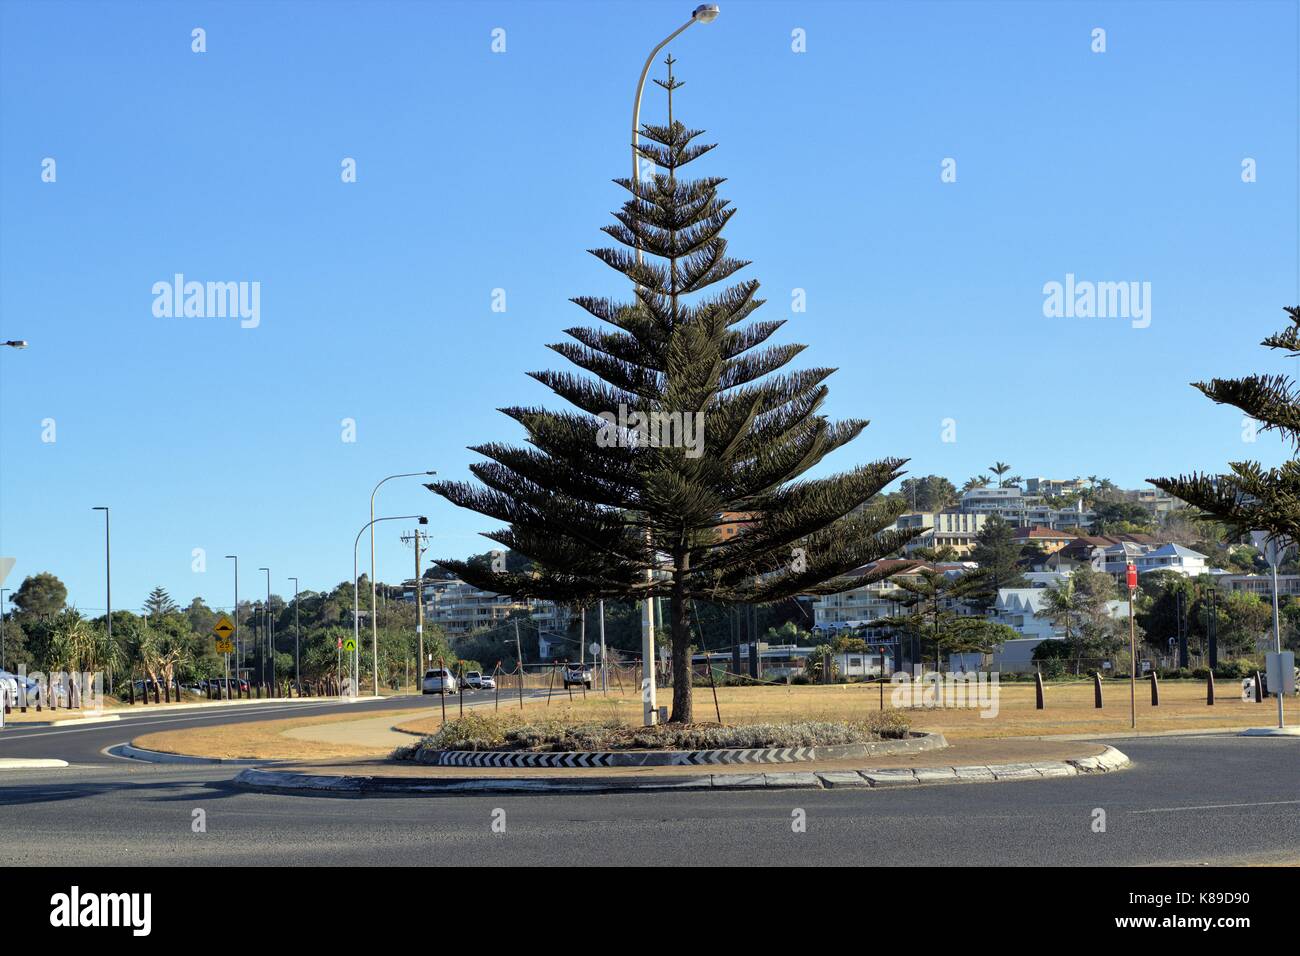 Kreisverkehr in der australischen Stadt von Coffs Harbour. Baum im Kreisverkehr, Geschwindigkeit, Drehzahl Schalter Schild, kein Anhalten Zeichen Stockfoto